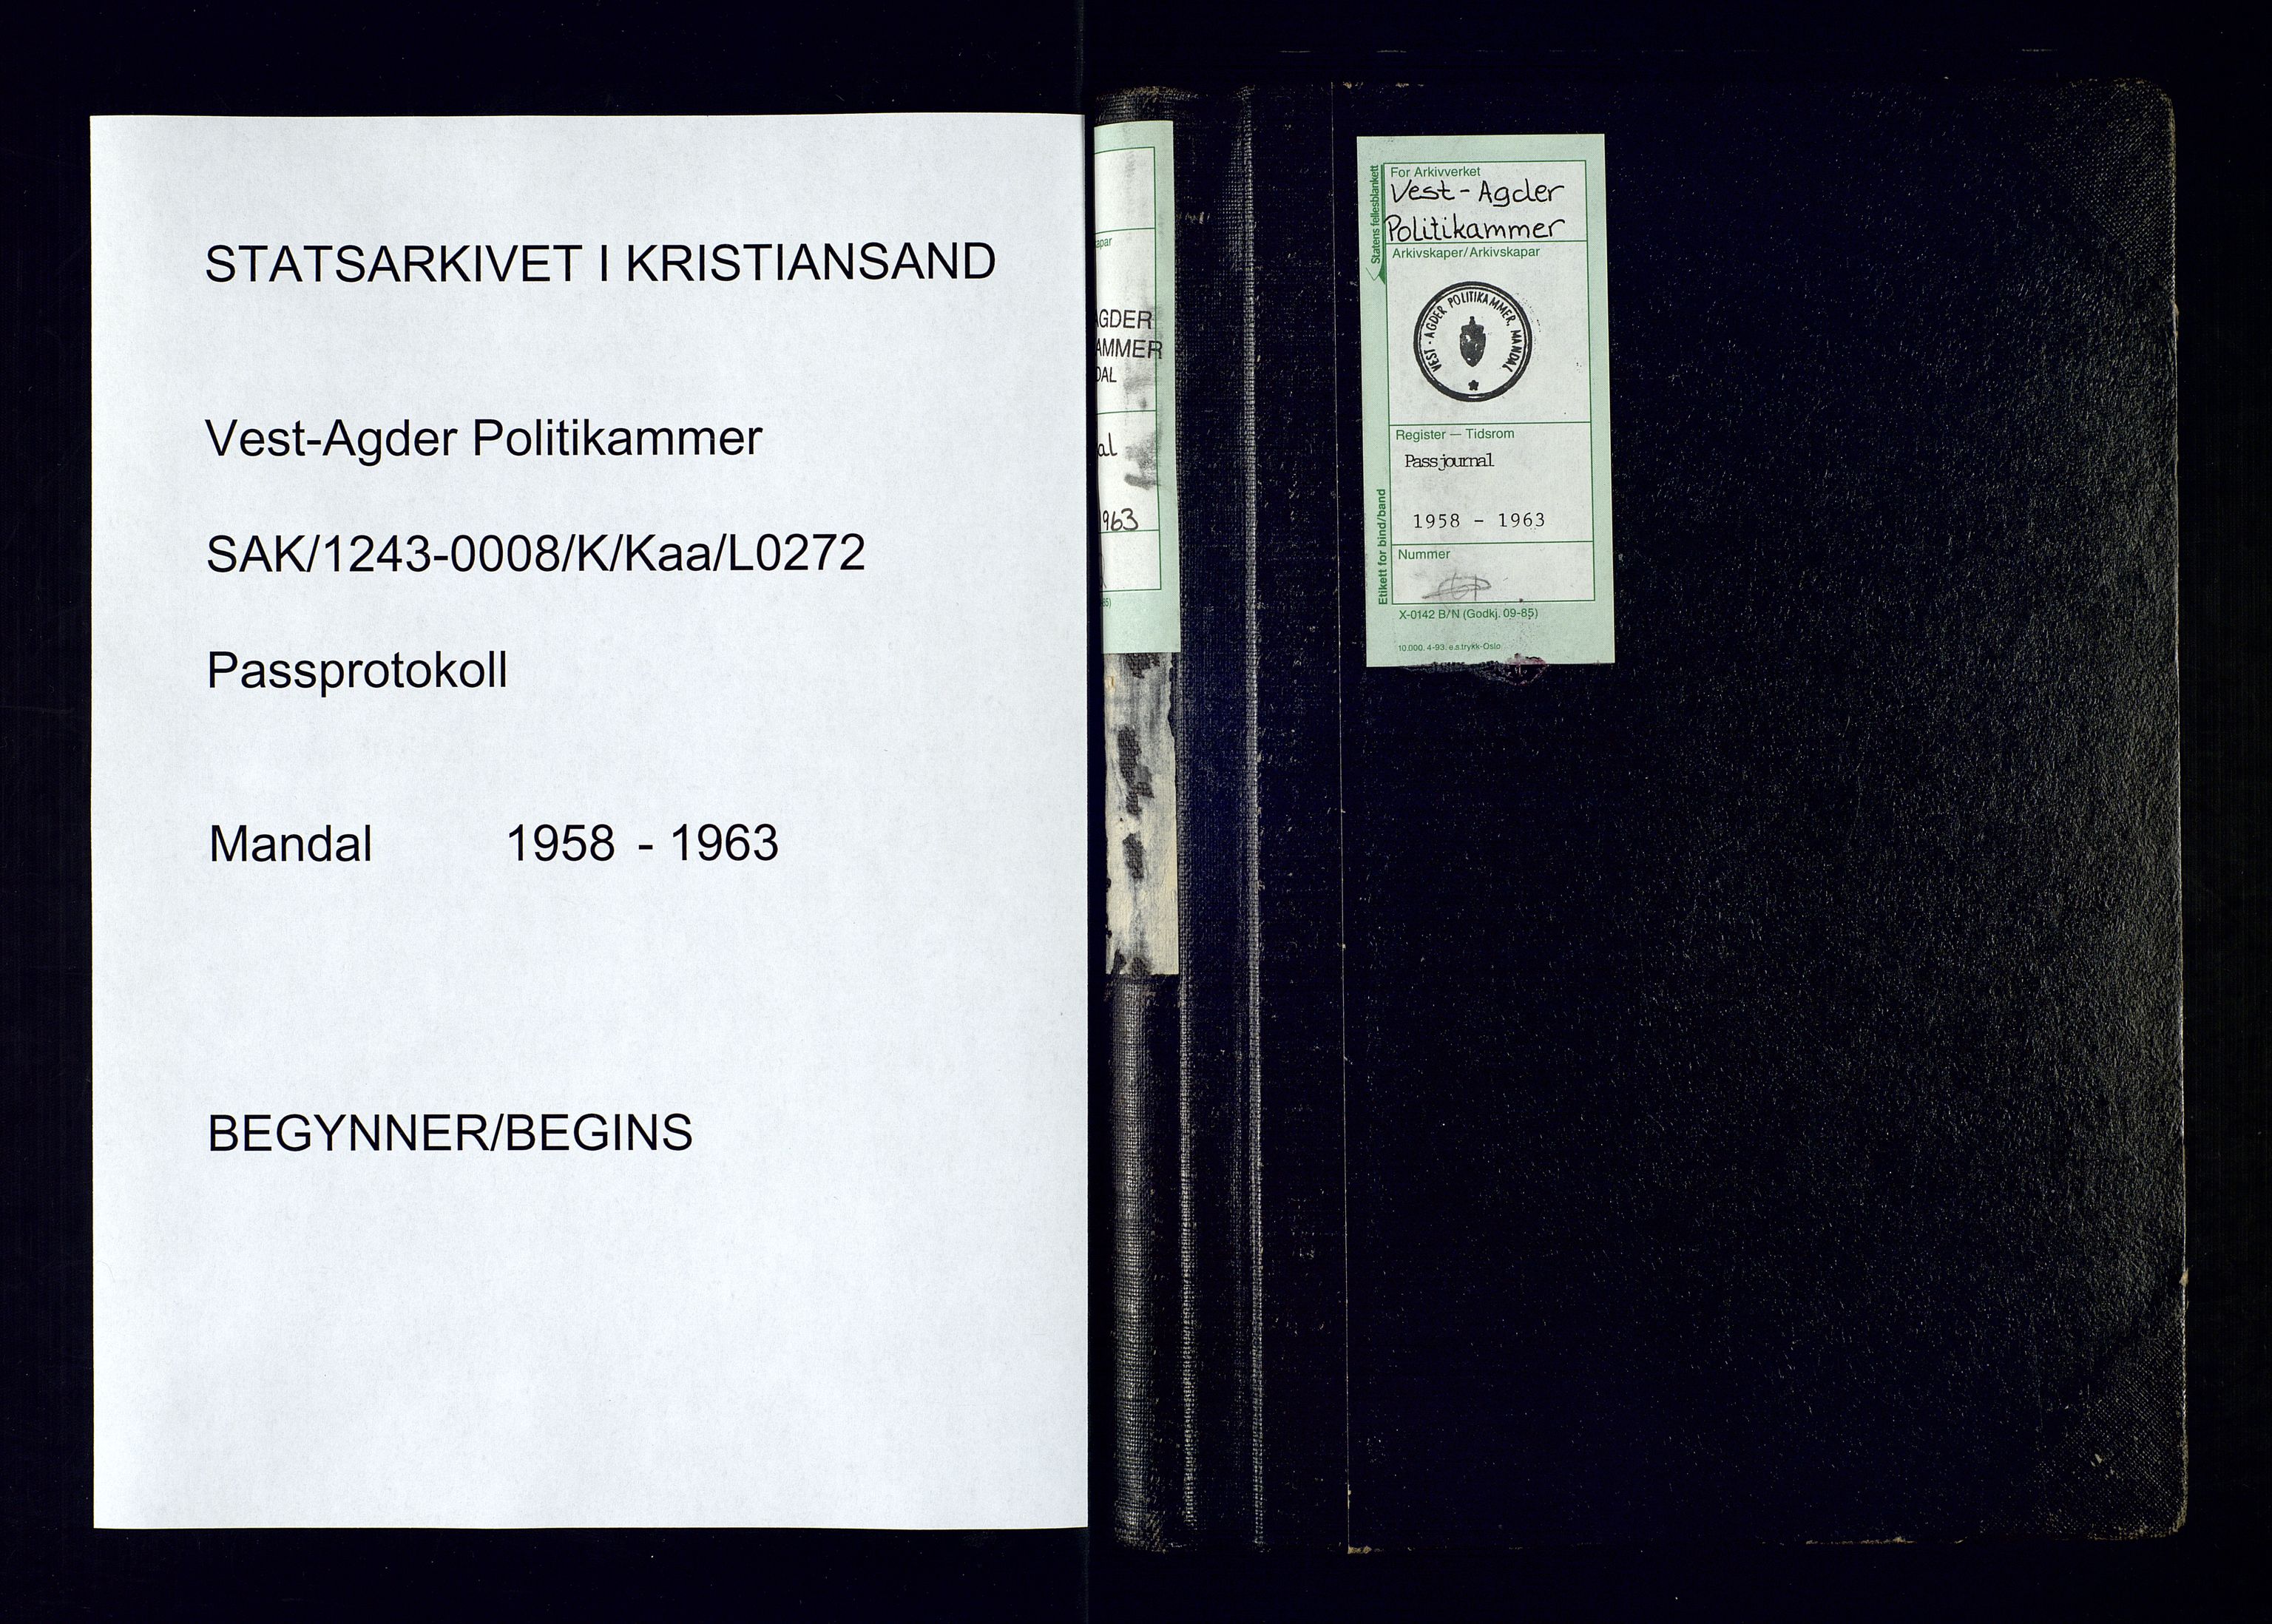 Vest-Agder politikammer, SAK/1243-0008/K/Kaa/L0272: Passjournal, 1958-1963